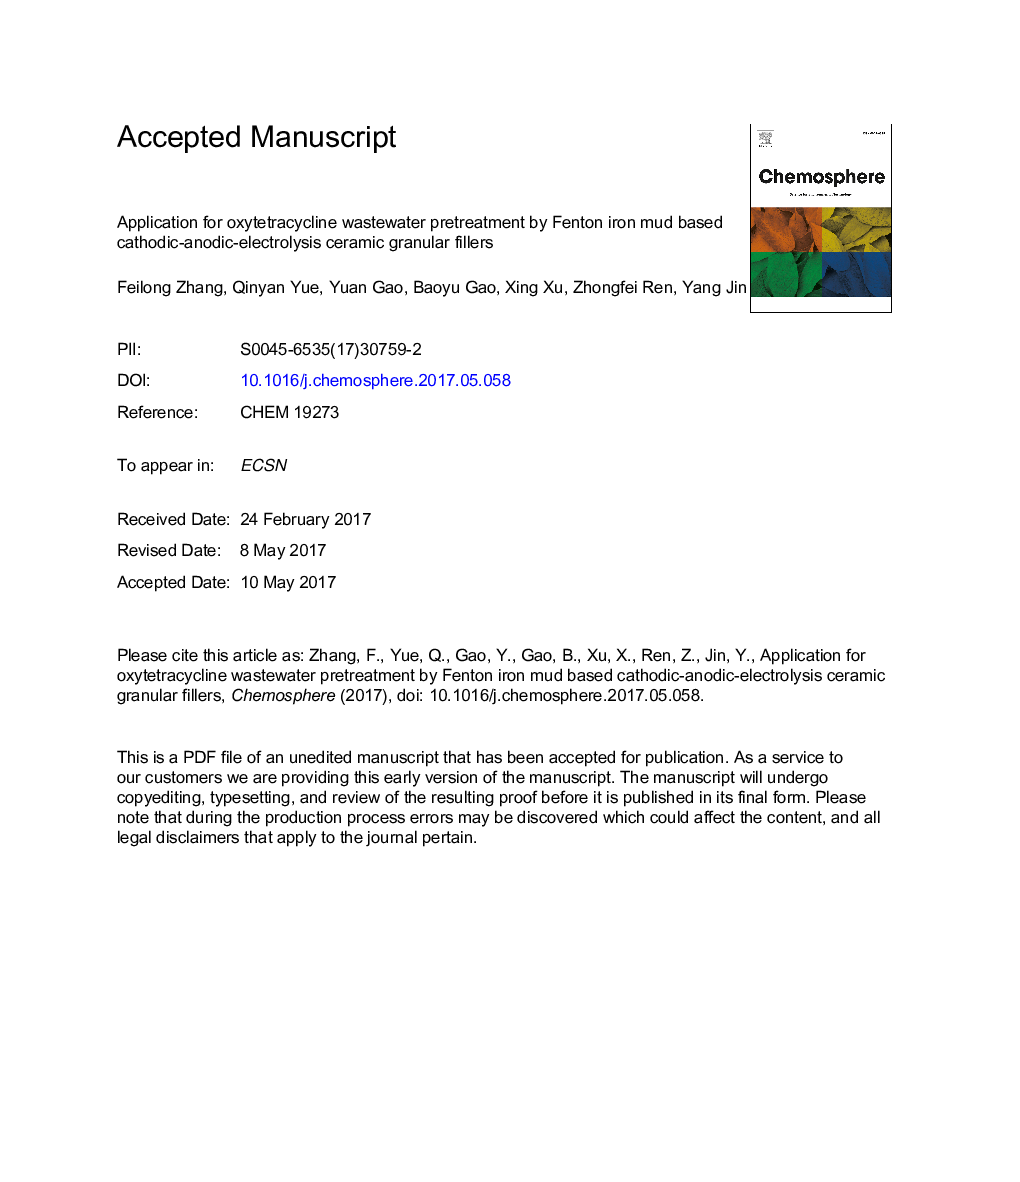 کاربرد برای پیشگیری از فاضلاب اکسای تتراسایکلین توسط پرکننده های گرانول سرامیکی کاتدی- آنودای الکترولیز توسط گودال فنتون 